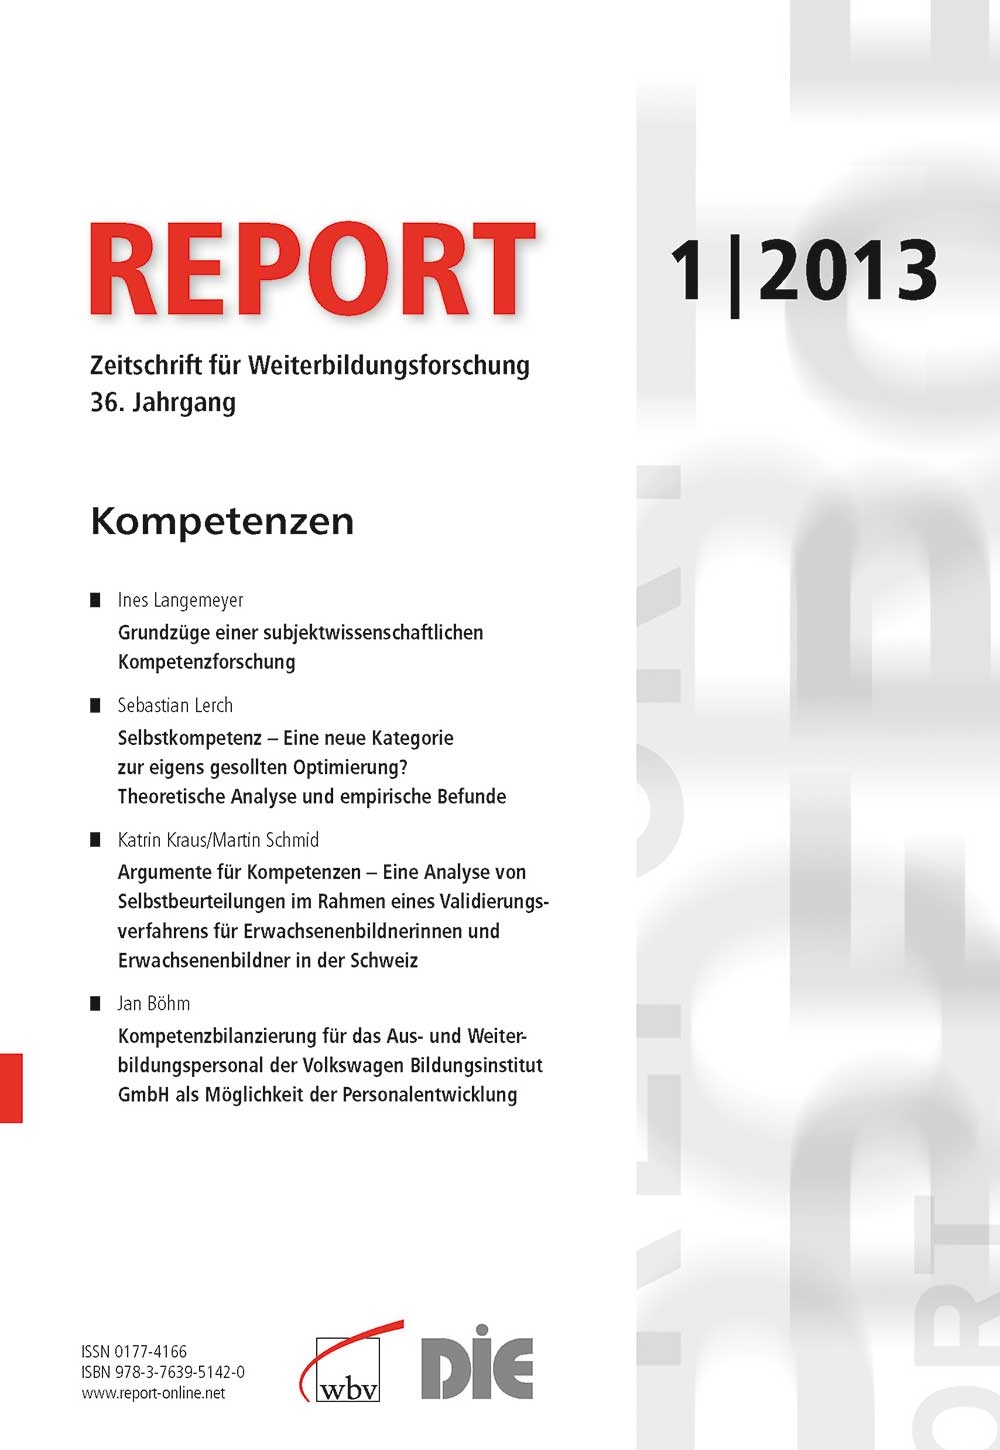 REPORT-Zeitschrift für Weiterbildungsforschung 01/2013